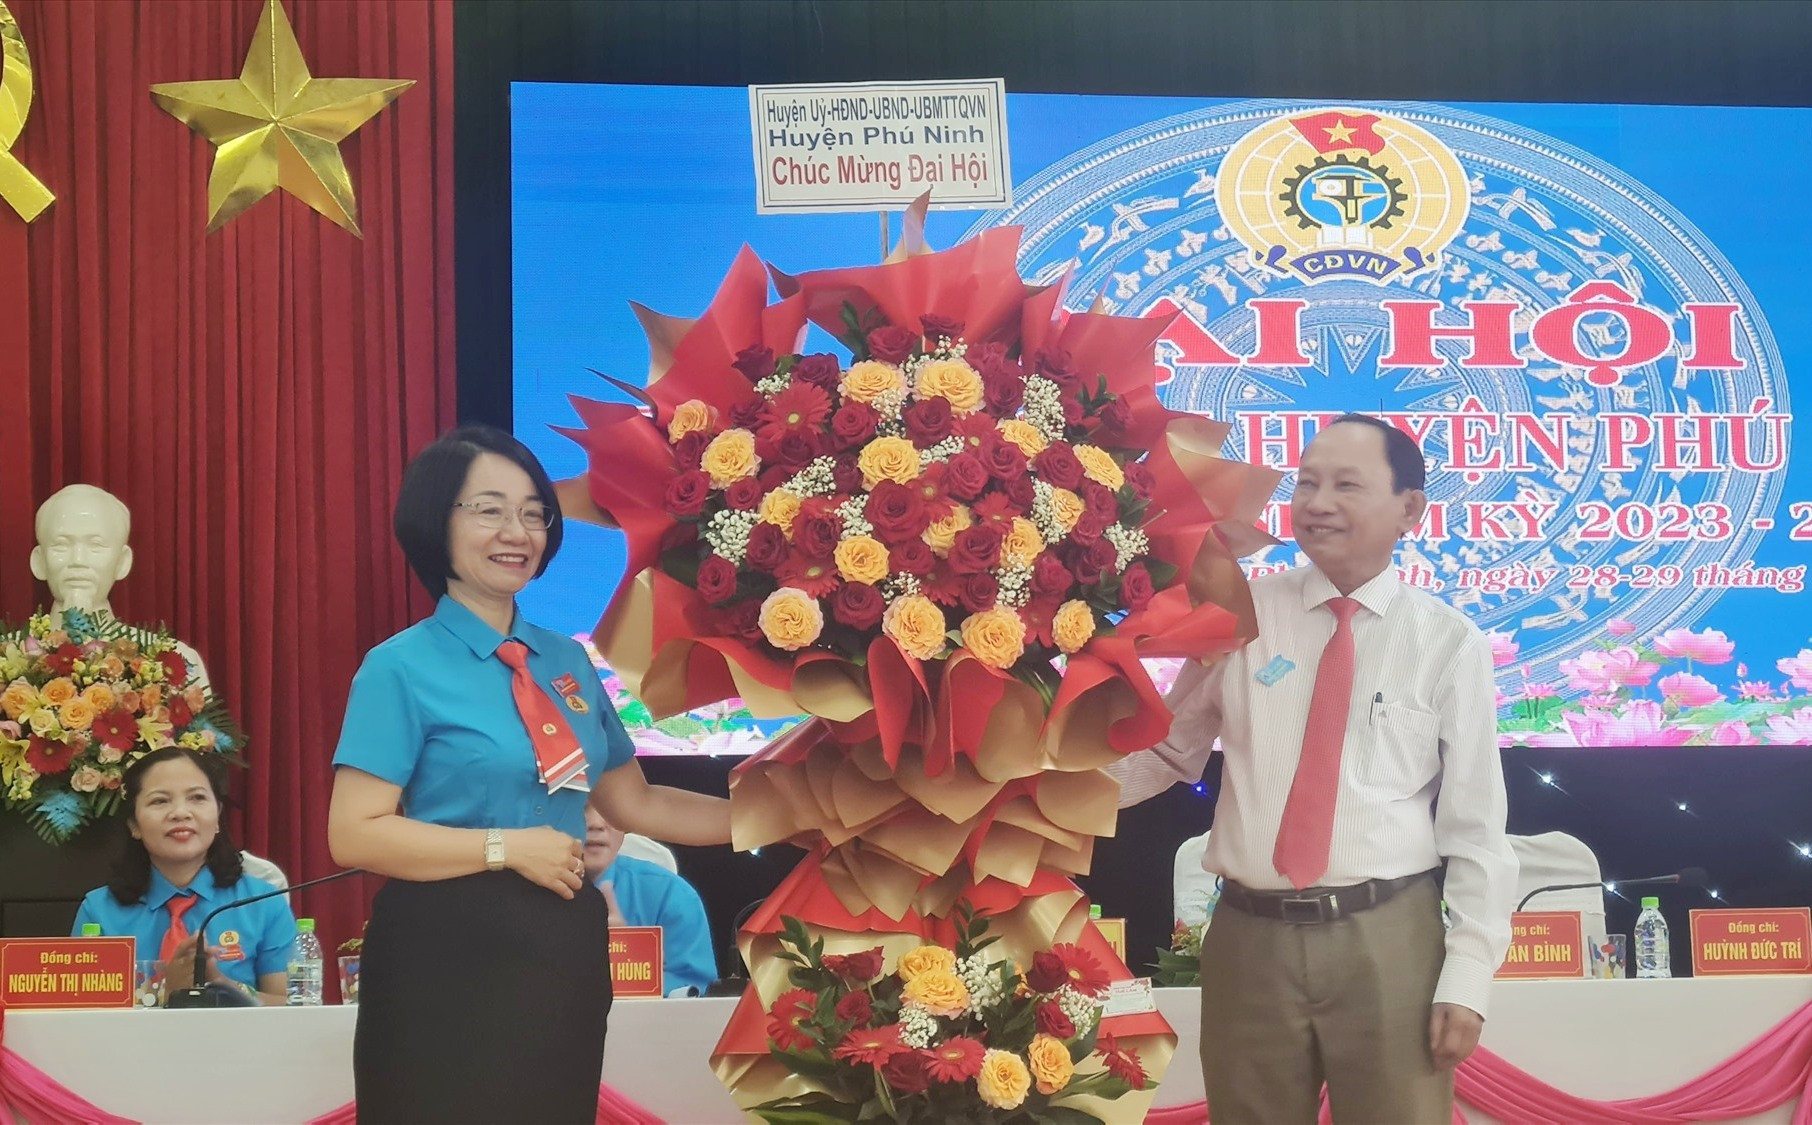 Lãnh đạo huyện Phú Ninh tặng hoa chúc mừng đại hội. Ảnh: D.L